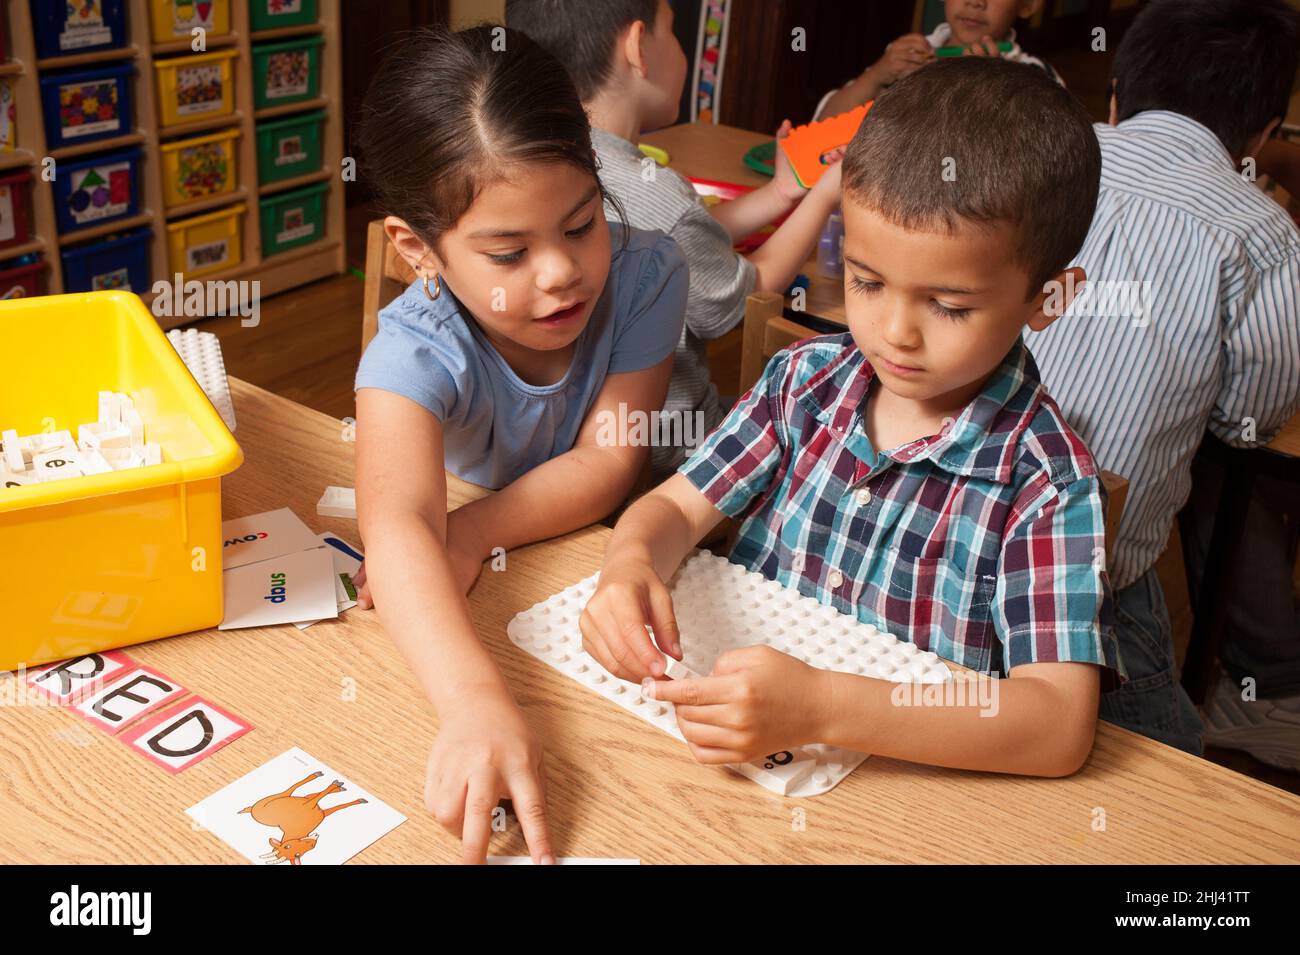 Educación Preescolar Niños de 4-5 años niñas y niños jugando juegos educativos con letras del alfabeto Foto de stock